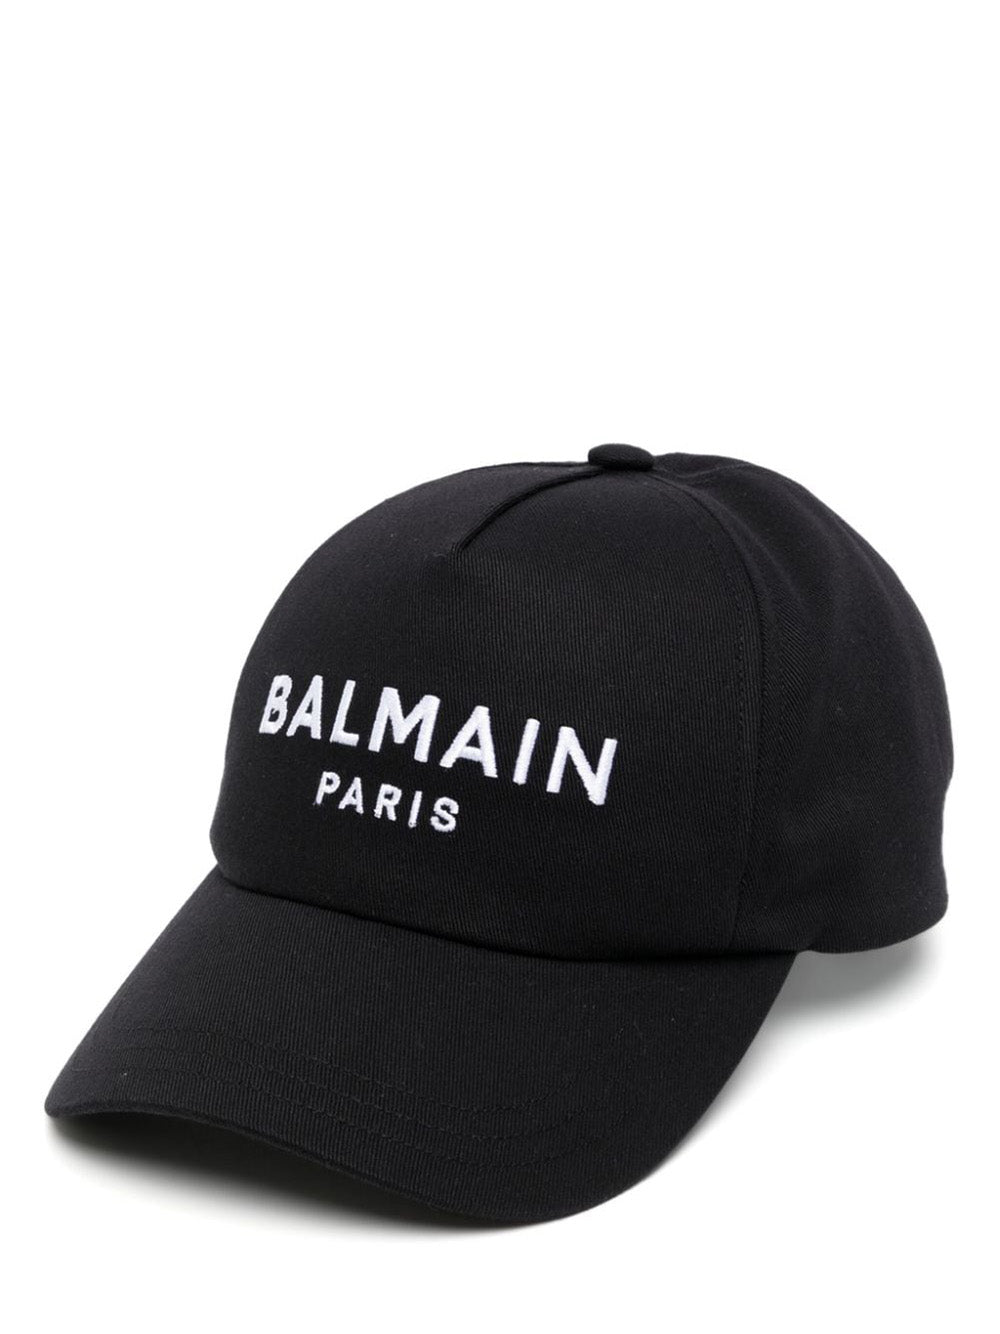     Balmain-Balmain-Cotton-Cap-Black-1